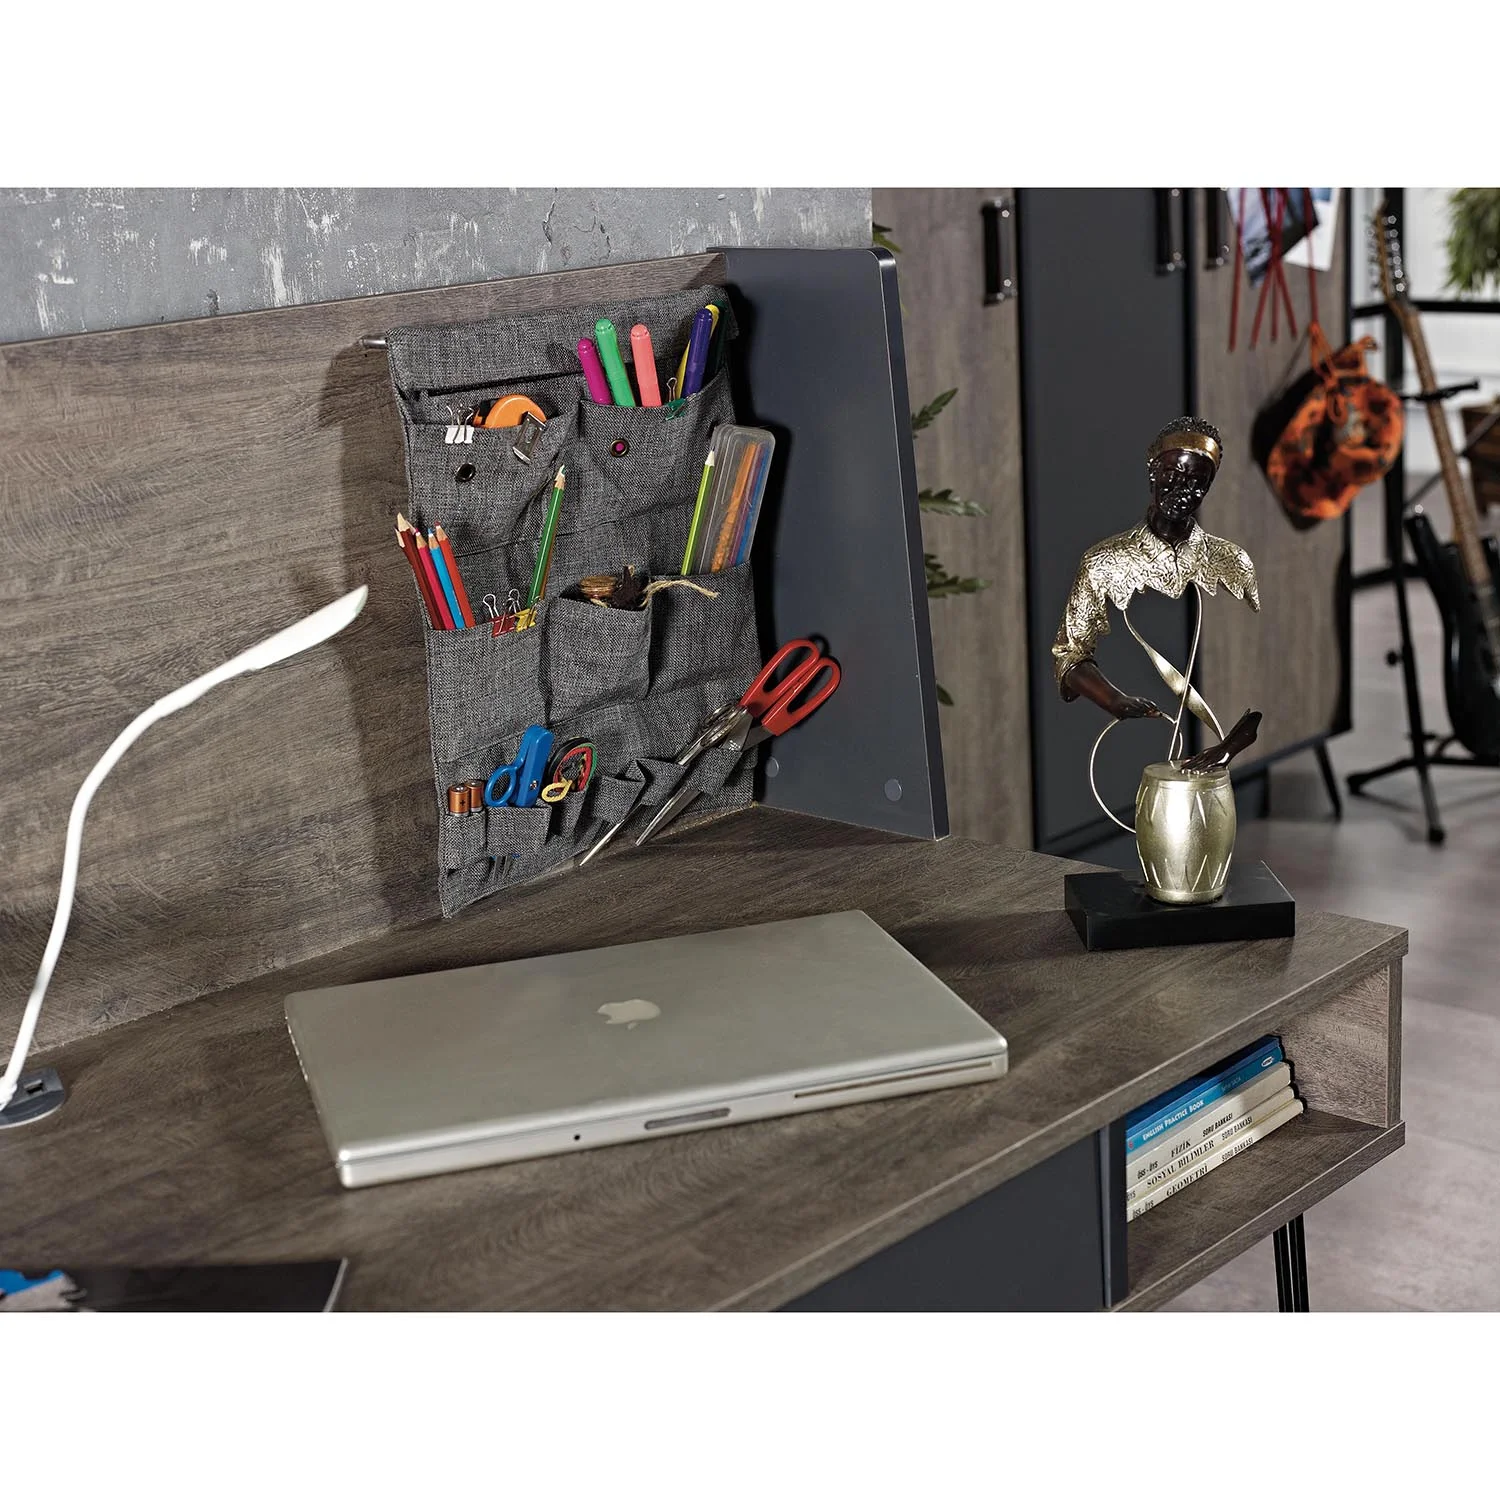 Polcos íróasztal fiókkal, rendszerezővel, mágneses táblával, USB portokkal HEDVIG, fekete-szürke